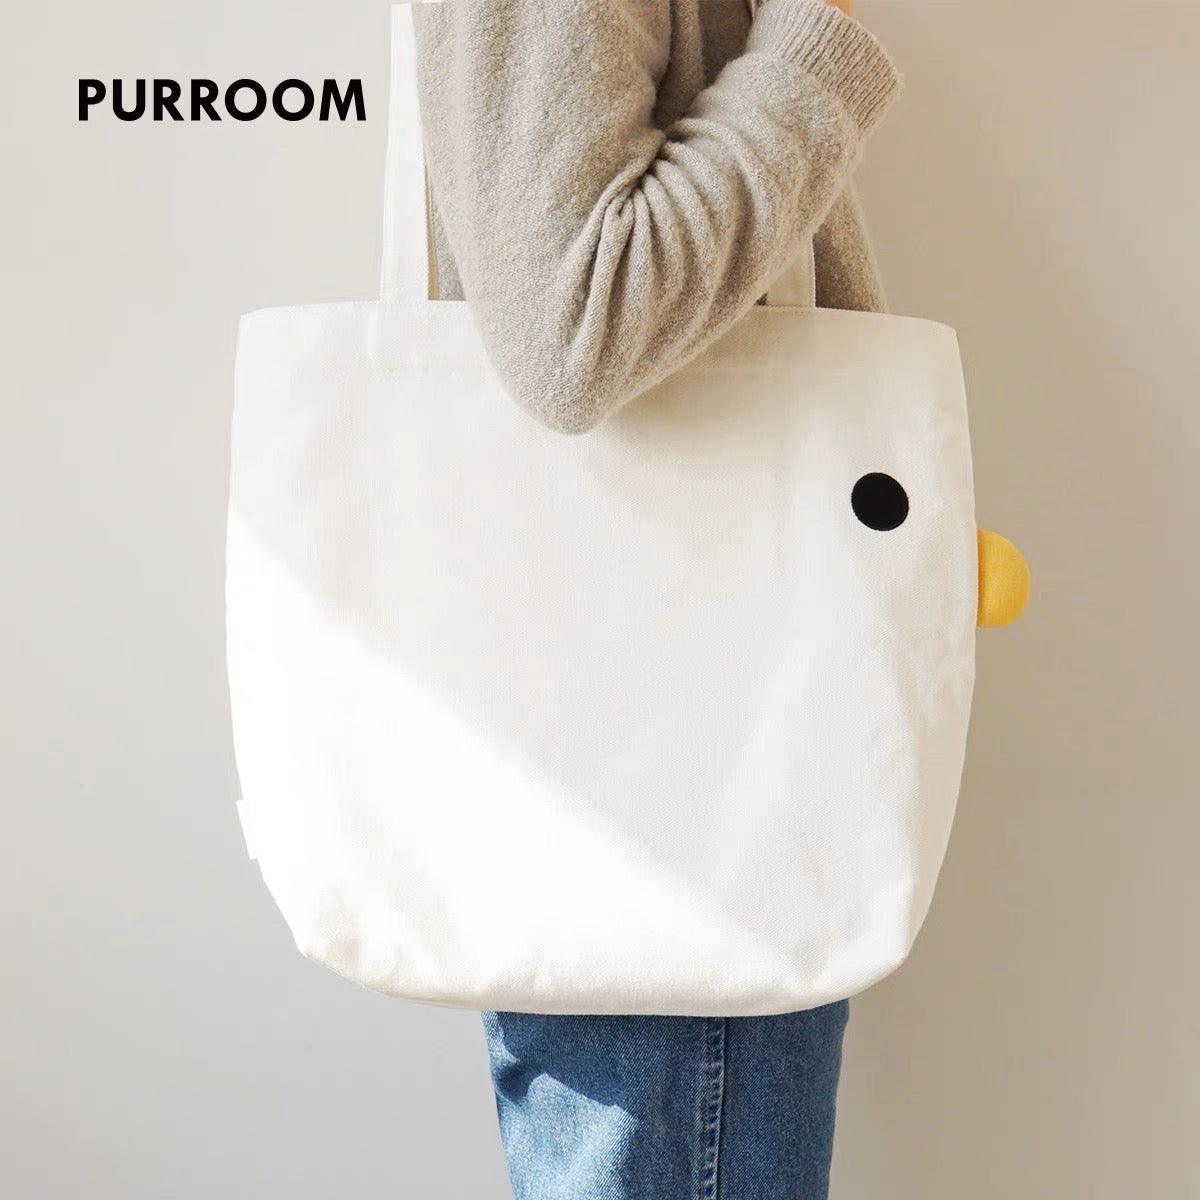 PURROOM Fabric Tote Bag - Pets Villa